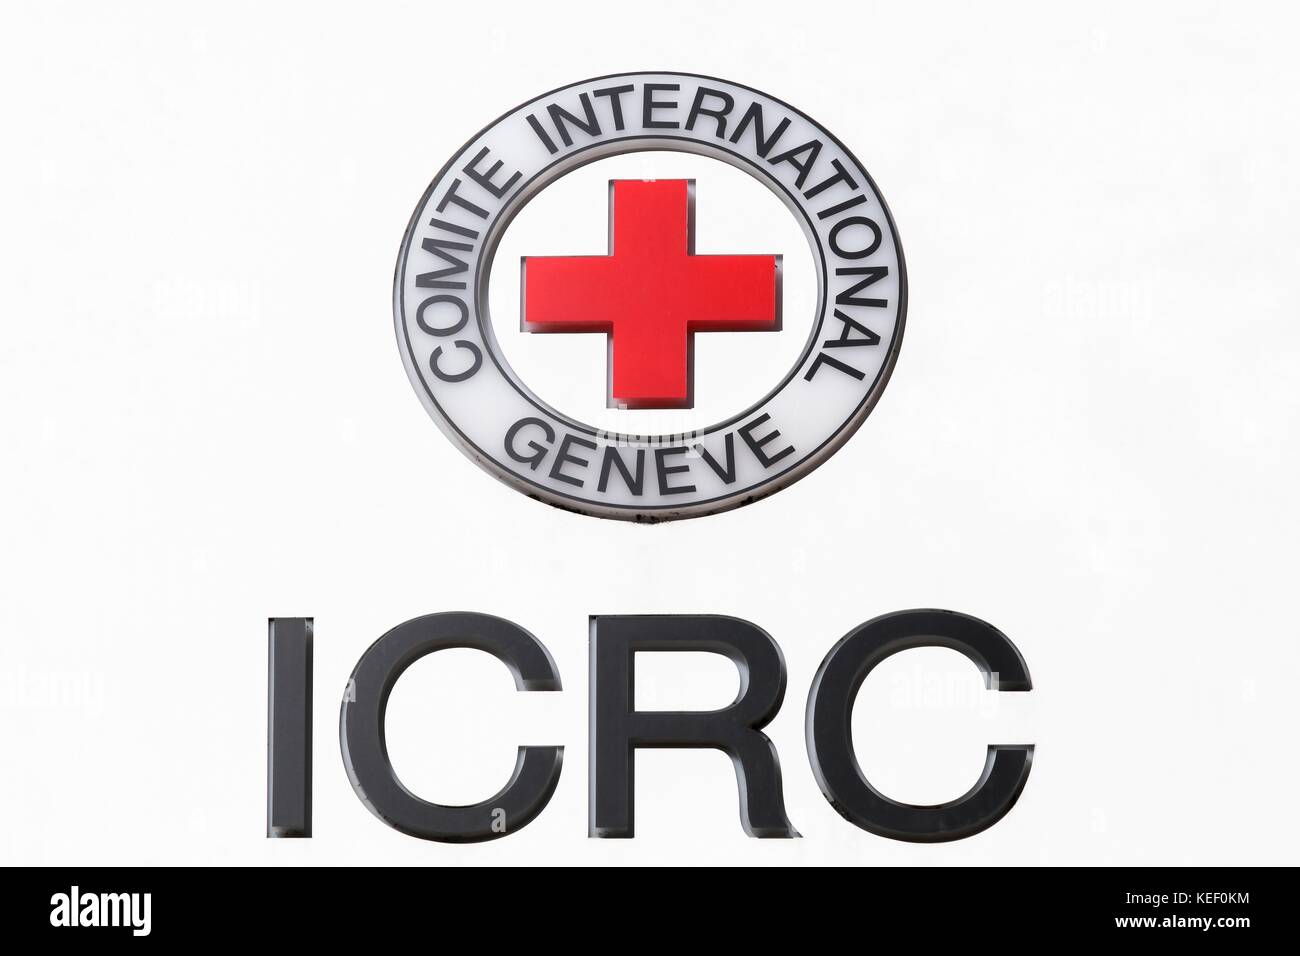 Ginevra, Svizzera - 1 ottobre 2017: cicr logo su un pannello. il Comitato internazionale della Croce Rossa è un ente umanitario Foto Stock